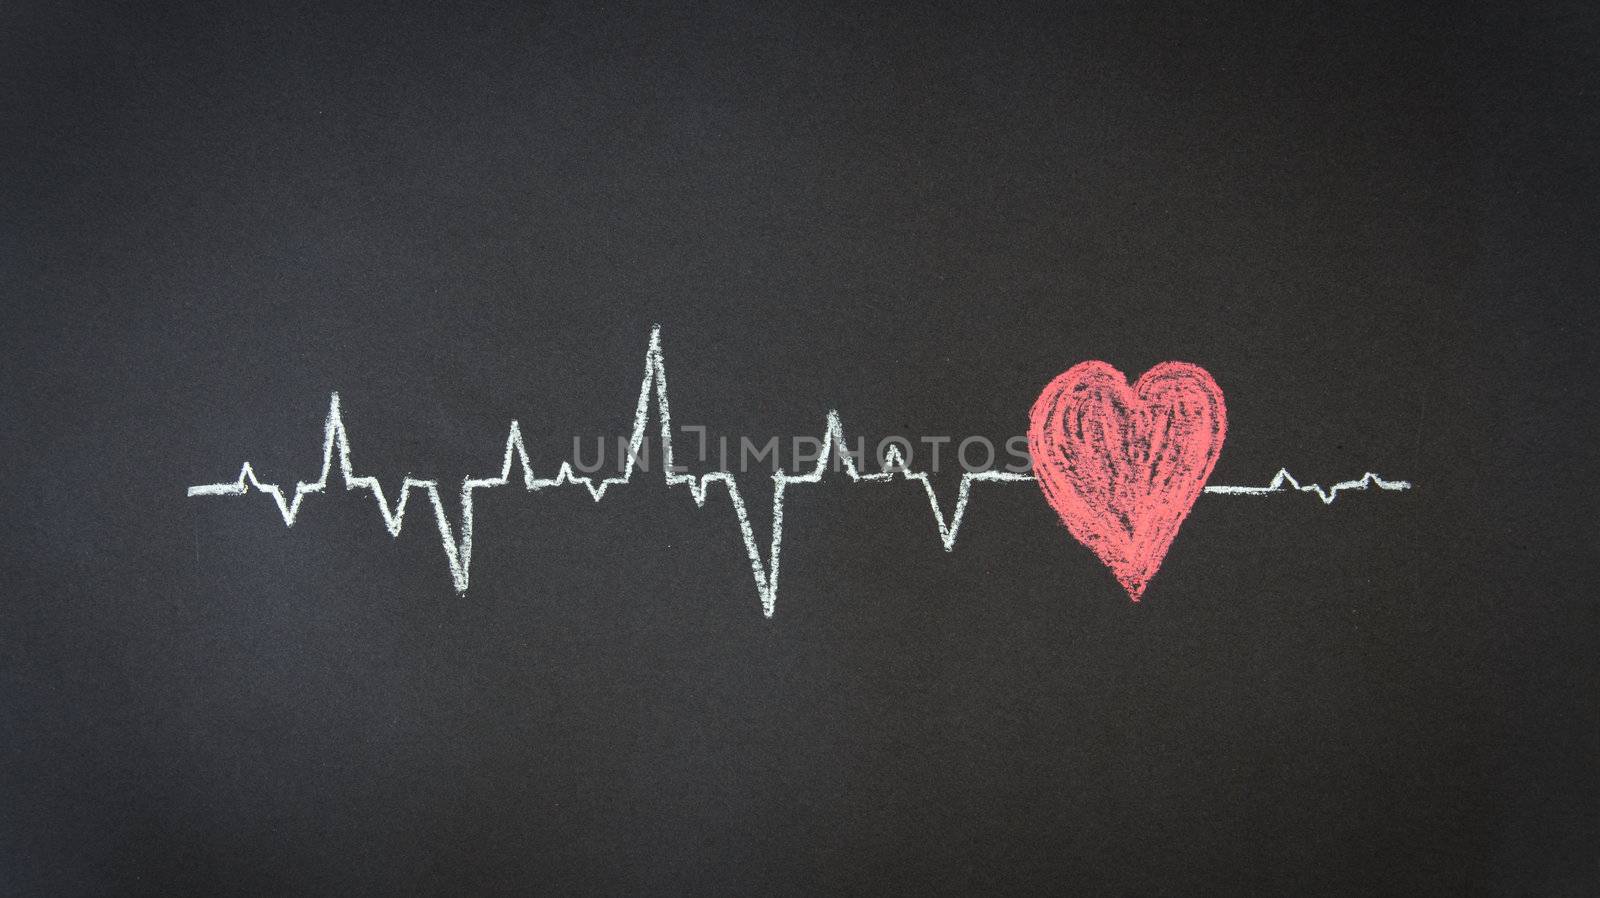 Heartbeat Diagram by kbuntu